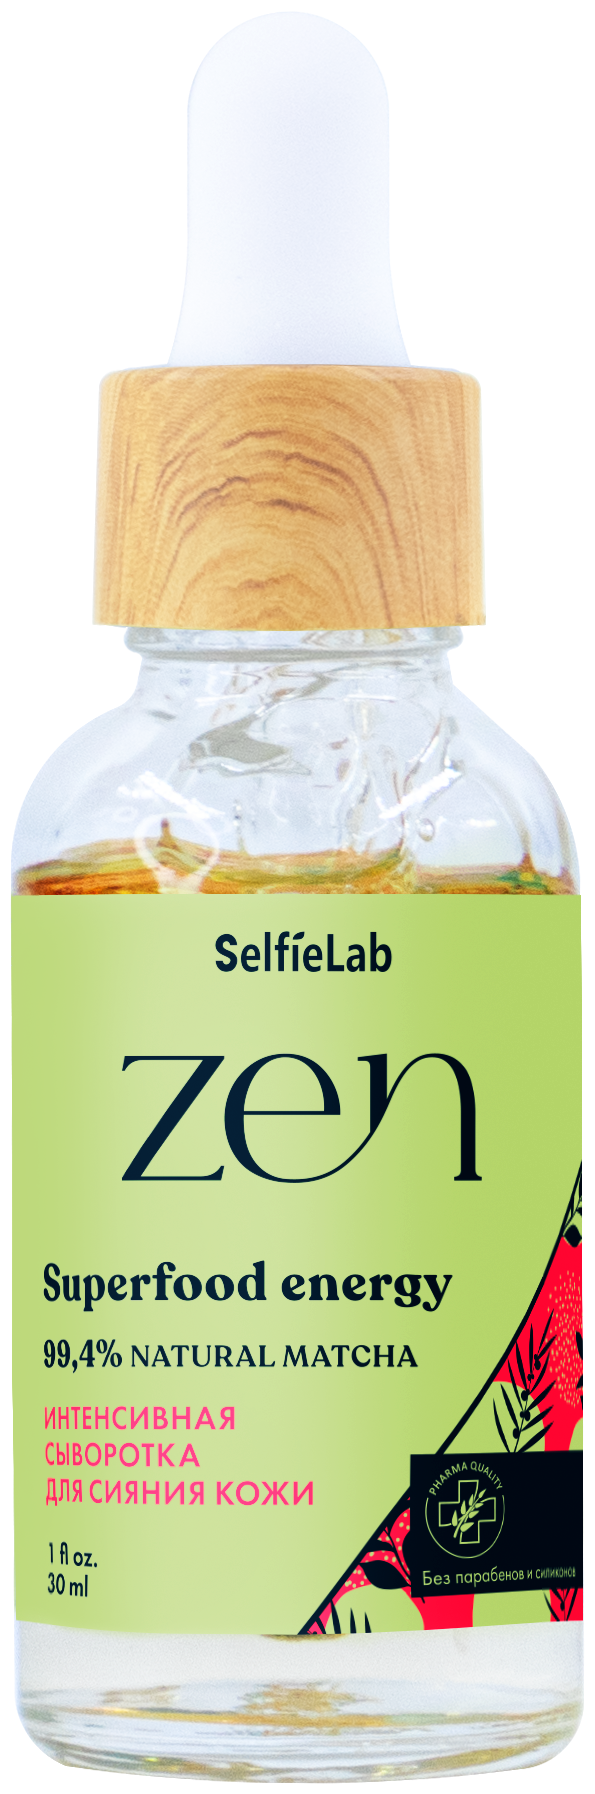 Интенсивная сыворотка для сияния кожи ZEN, для лица, товарный знак SelfieLab, флакон 30 мл